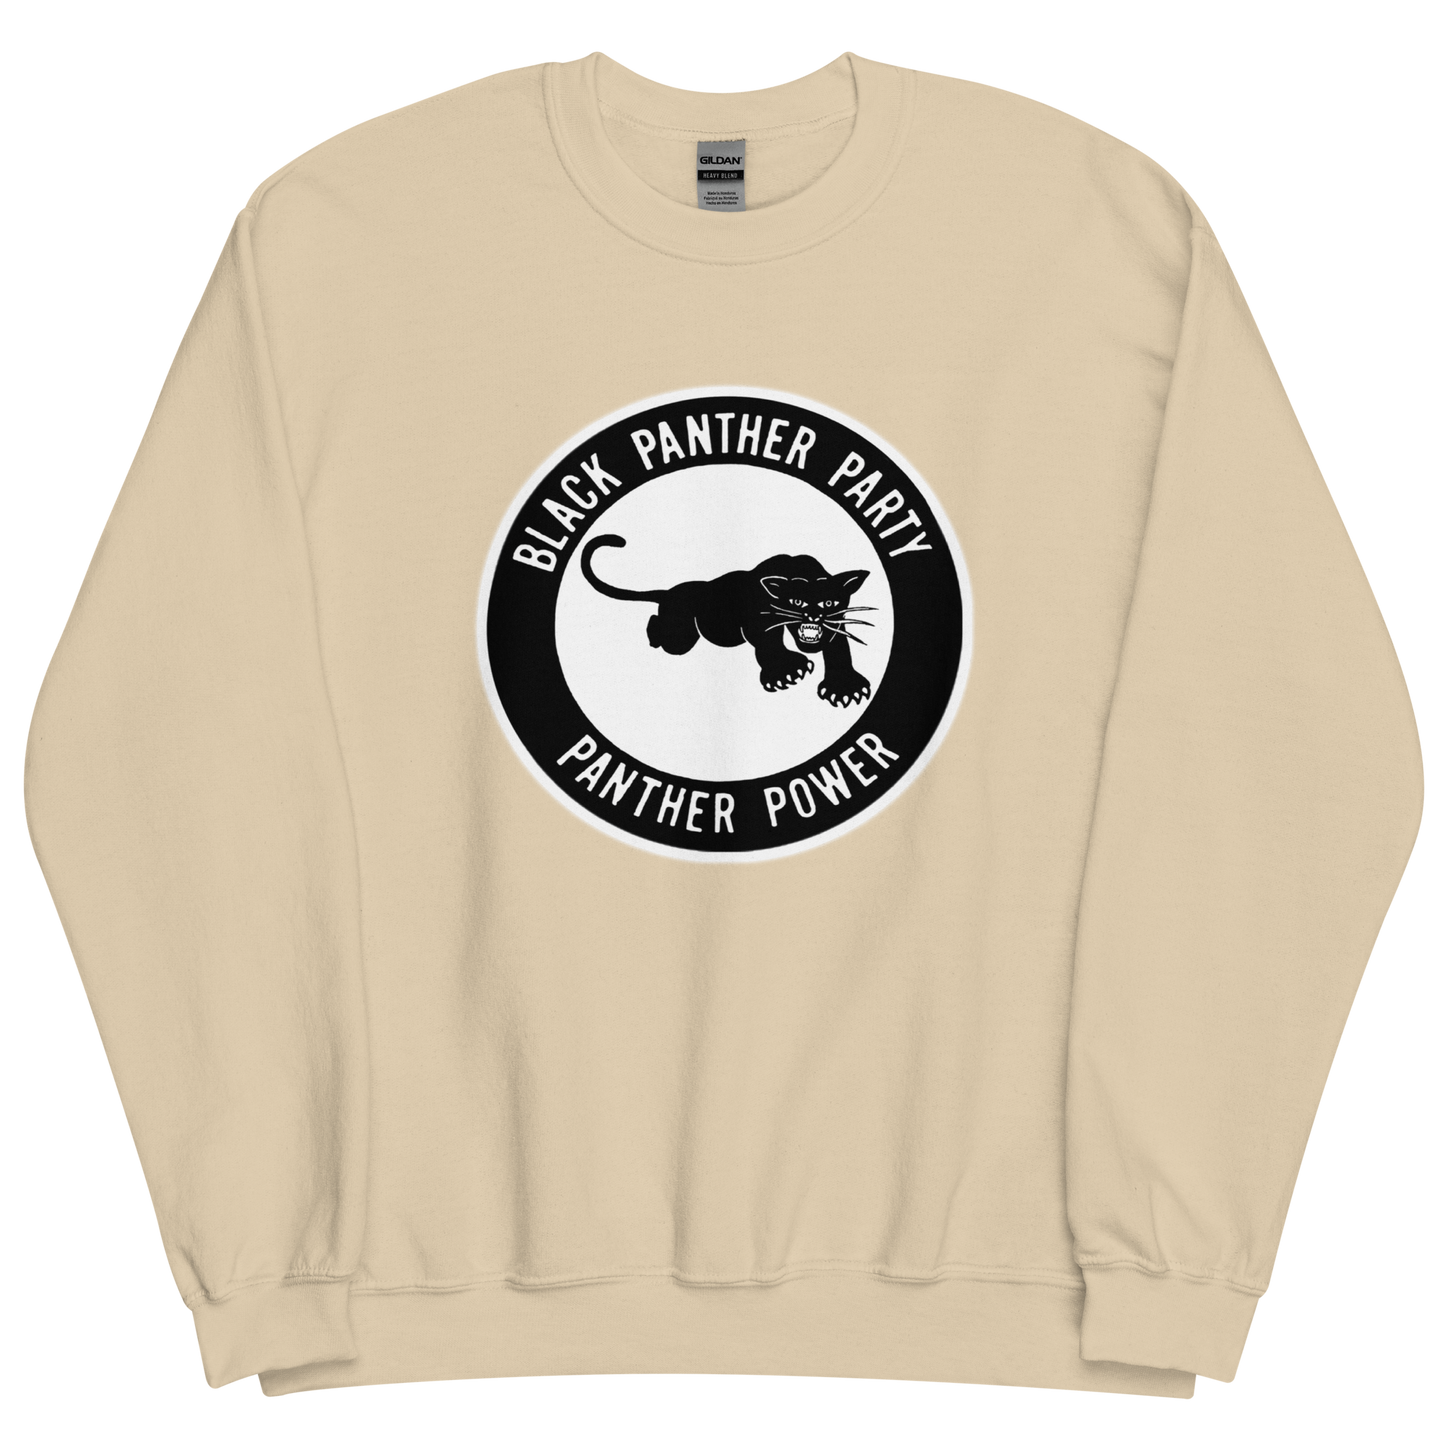 Black Panther Party Original Logo Sweatshirt